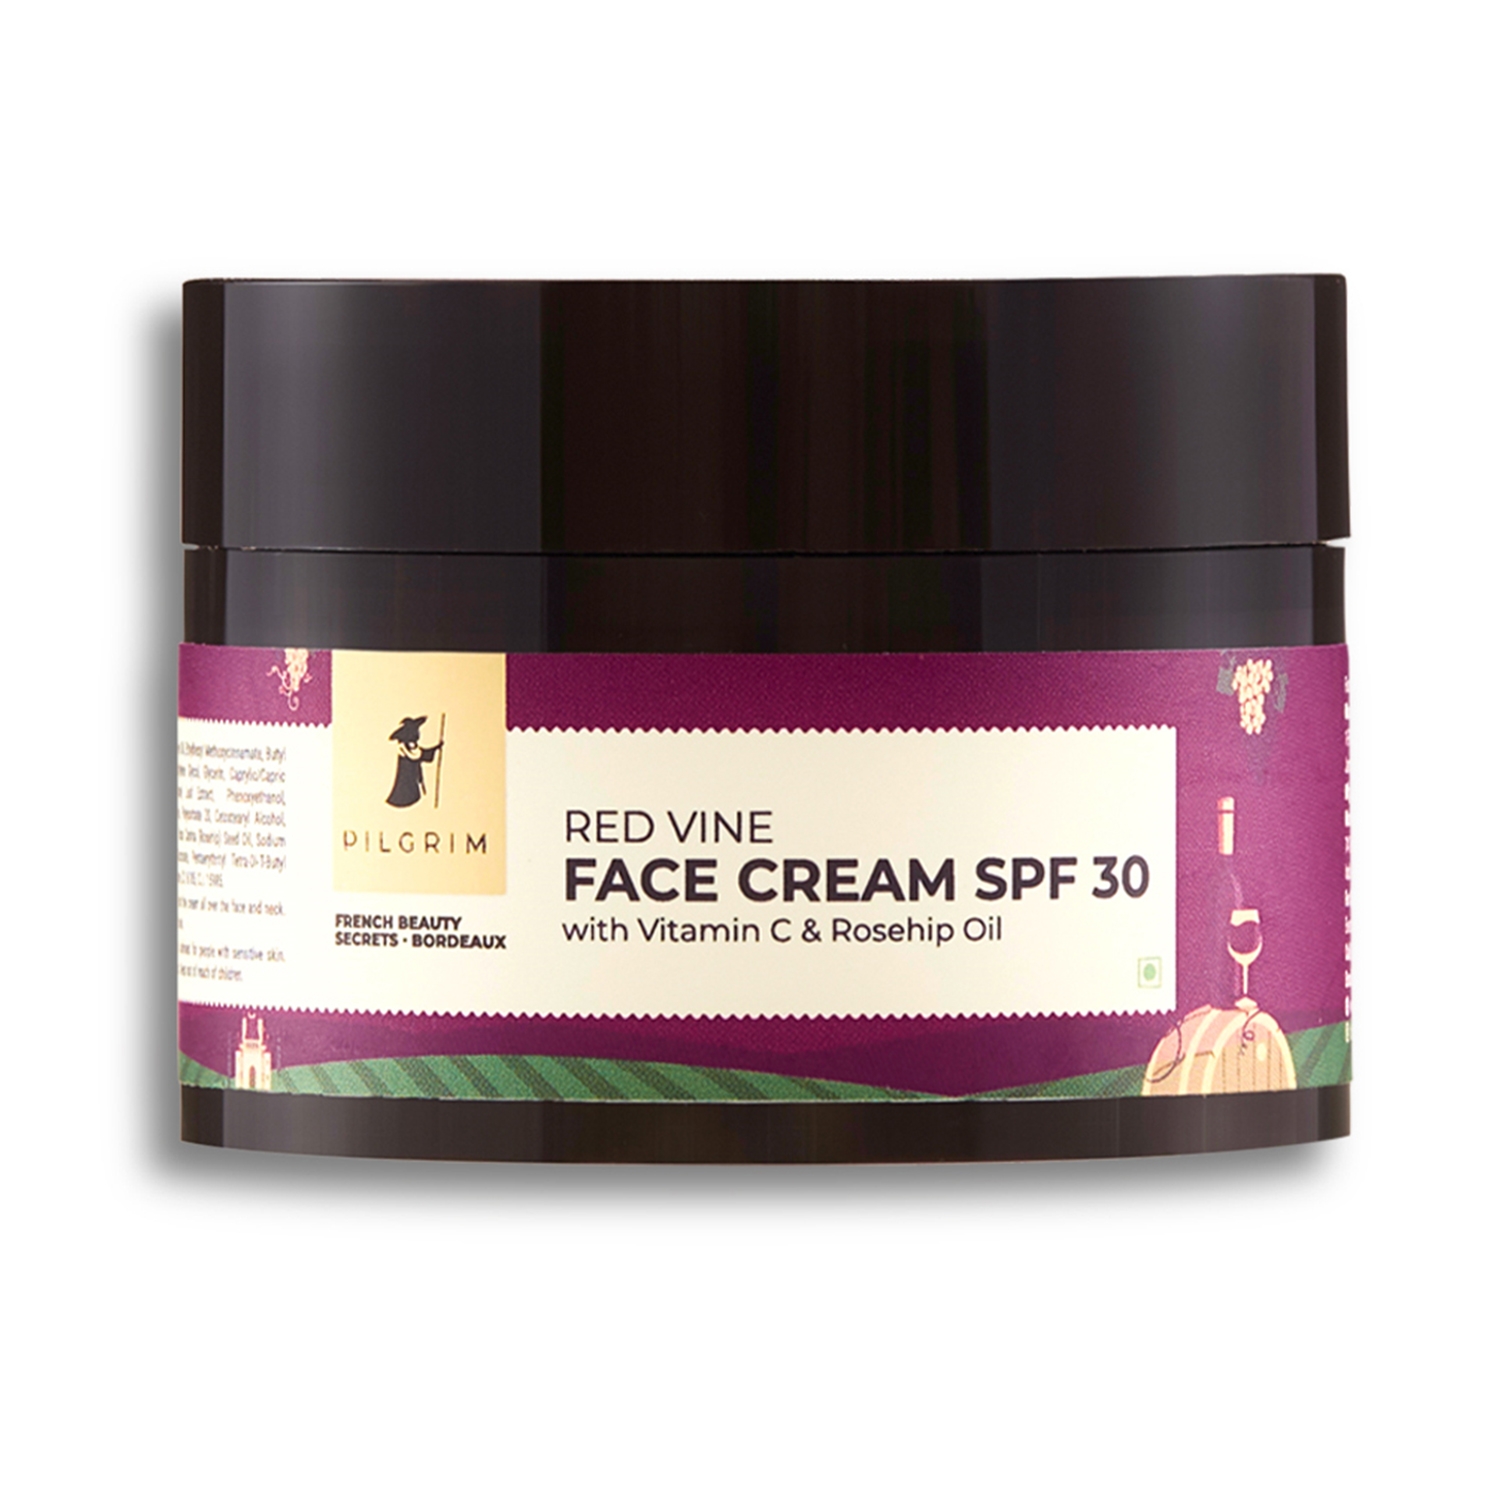 Pilgrim | Pilgrim Red Vine Face Cream With SPF 30 (50g)